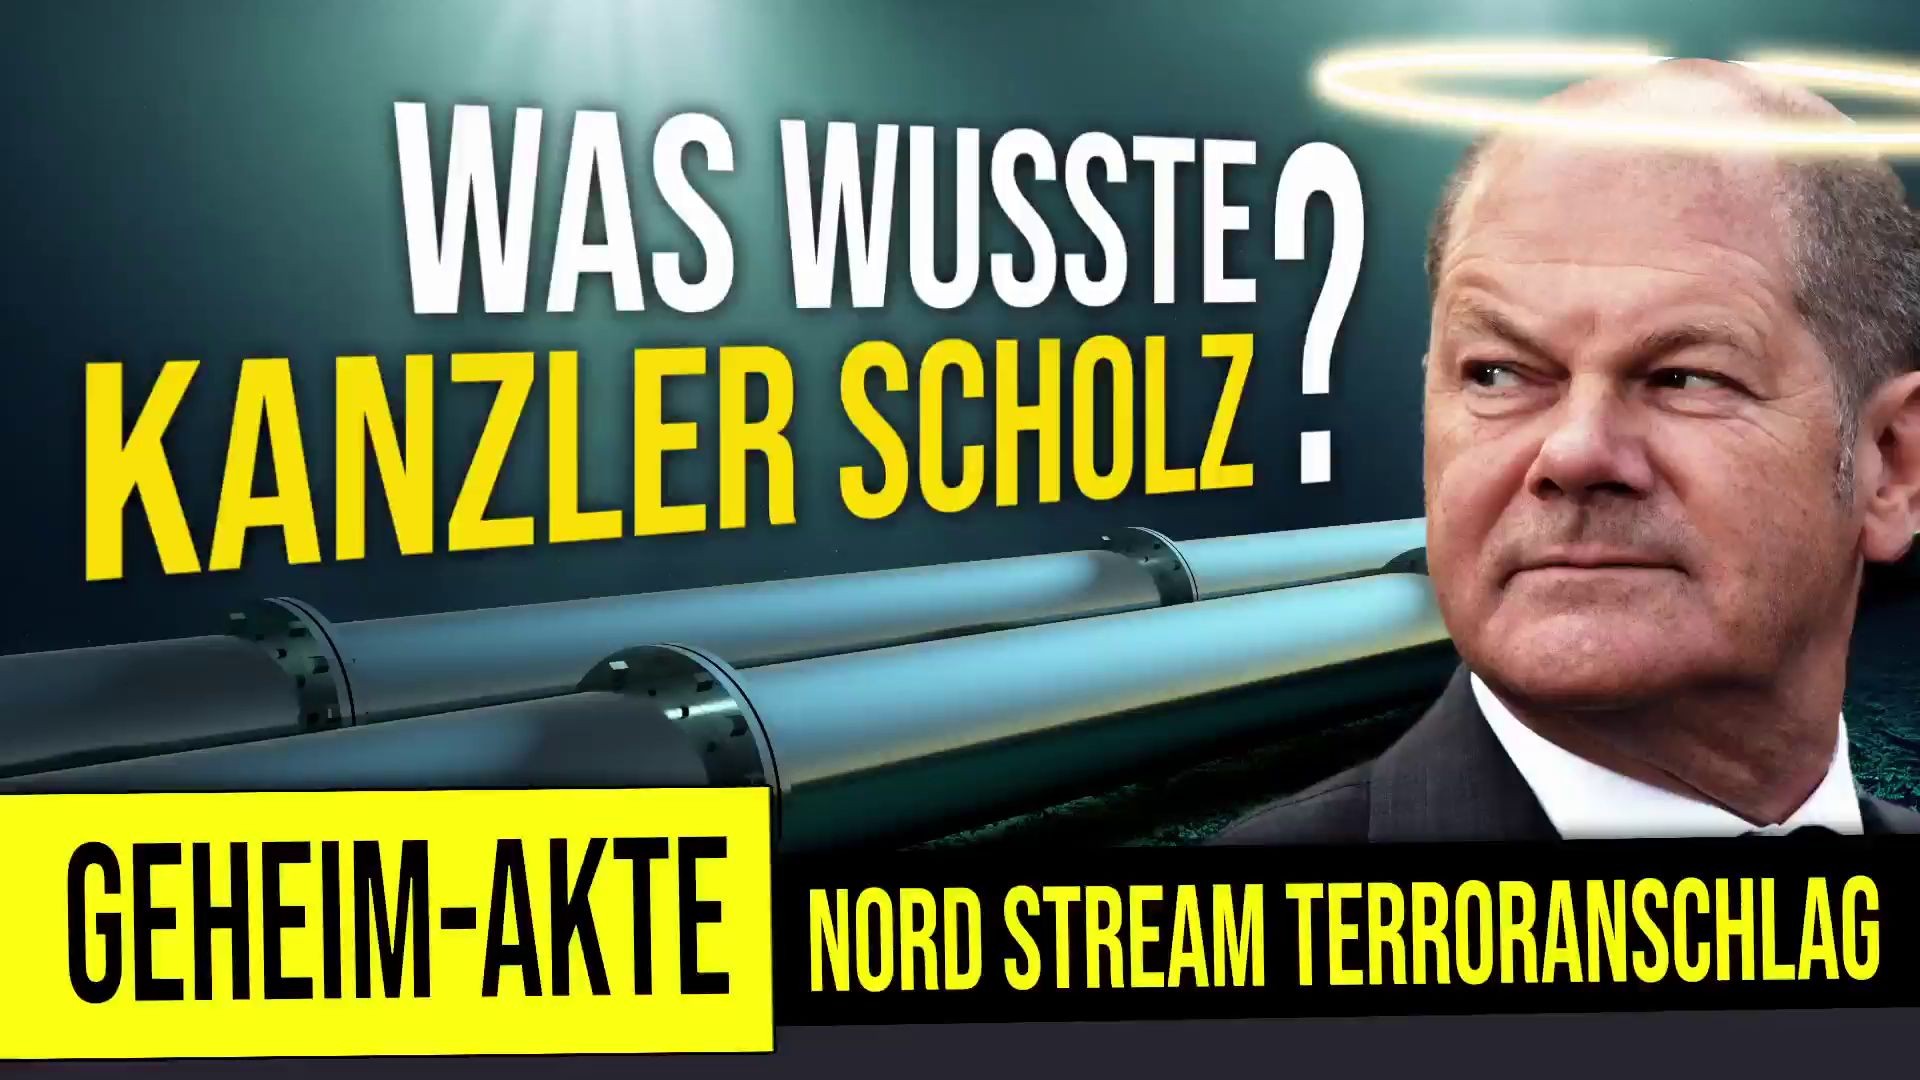 Geheim-Akte Nord-StreamTerroranschlag | Was wusste Kanzler Scholz?